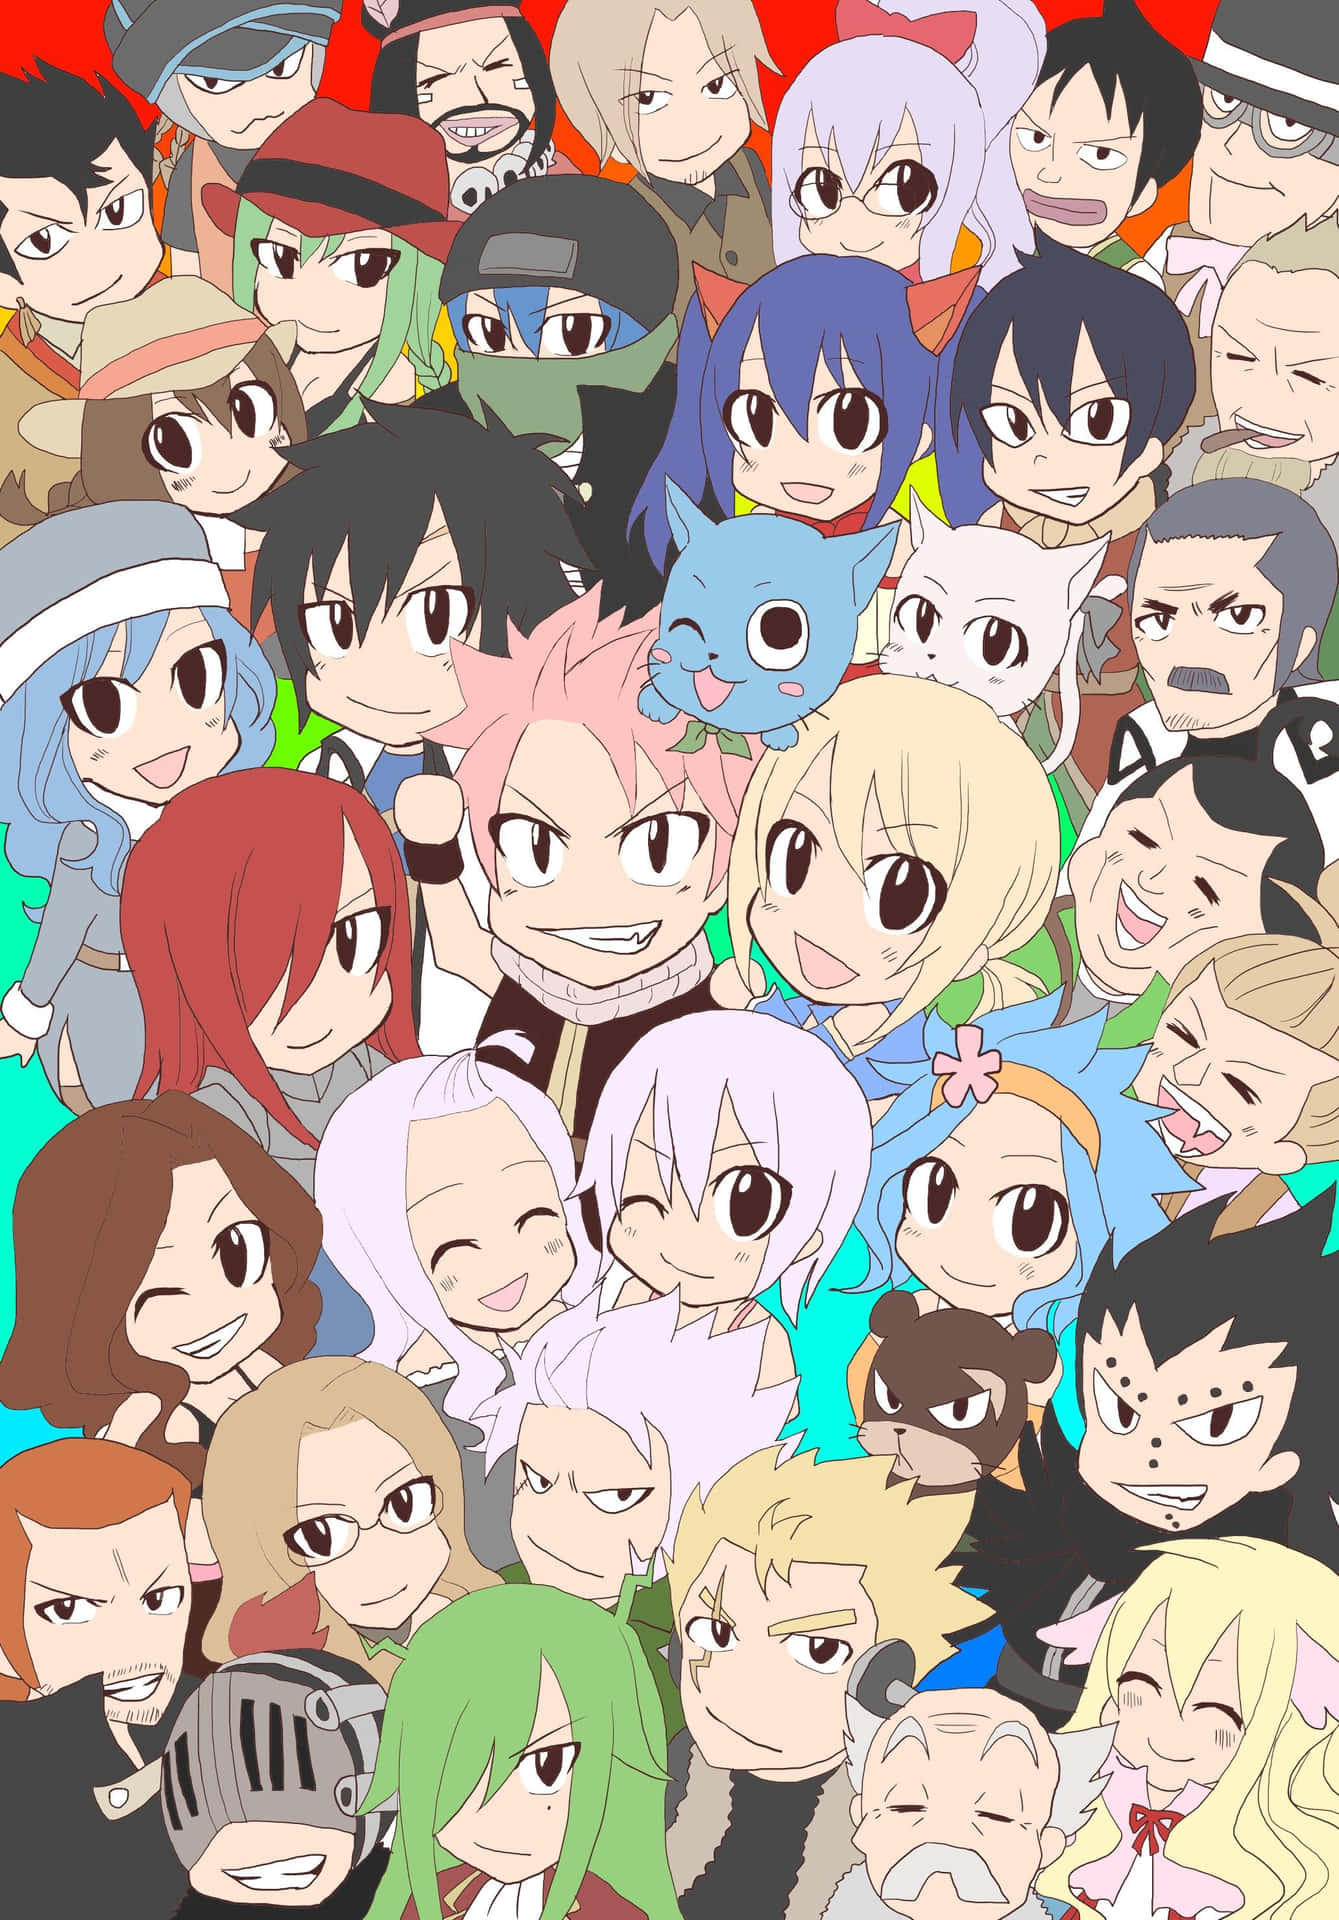 Fondosde Pantalla De Fairy Tail Para Iphone Con Personajes De Anime. Fondo de pantalla